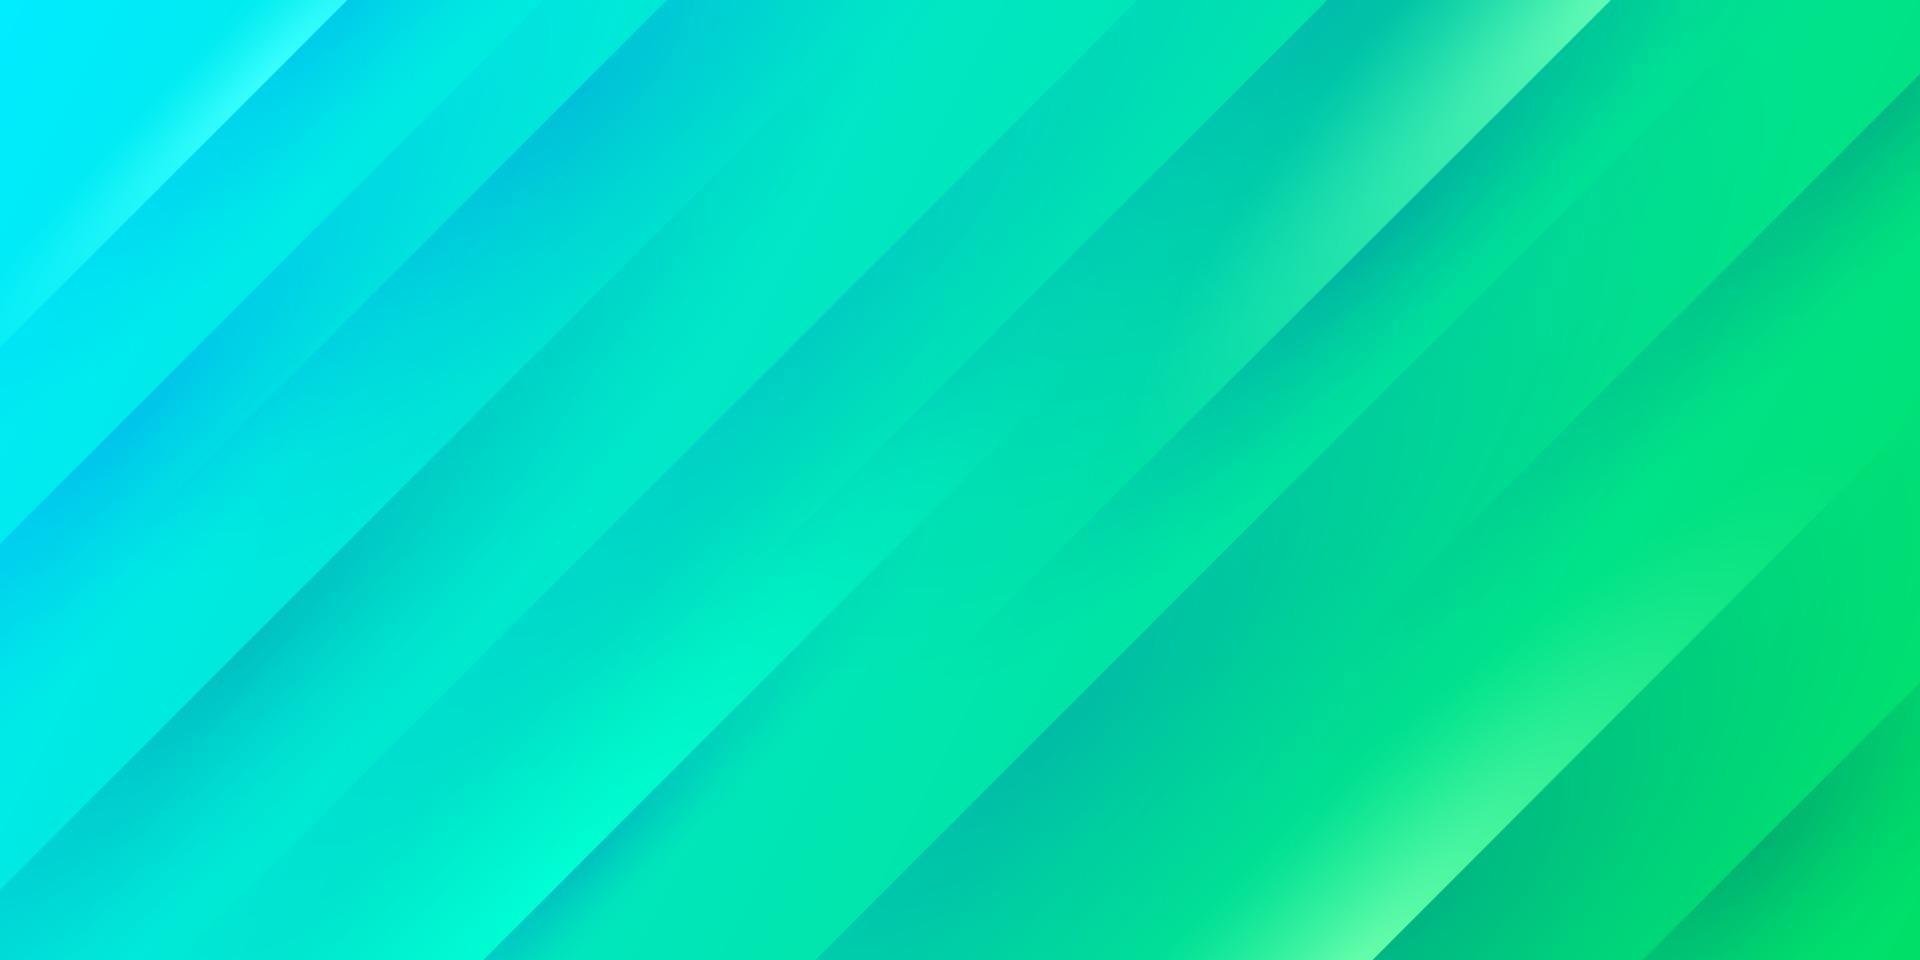 Fondo degradado abstracto azul claro y verde con líneas de rayas diagonales y textura. diseño de banner pastel moderno y simple. que puede utilizar para presentaciones de negocios, carteles, plantillas. vector eps10